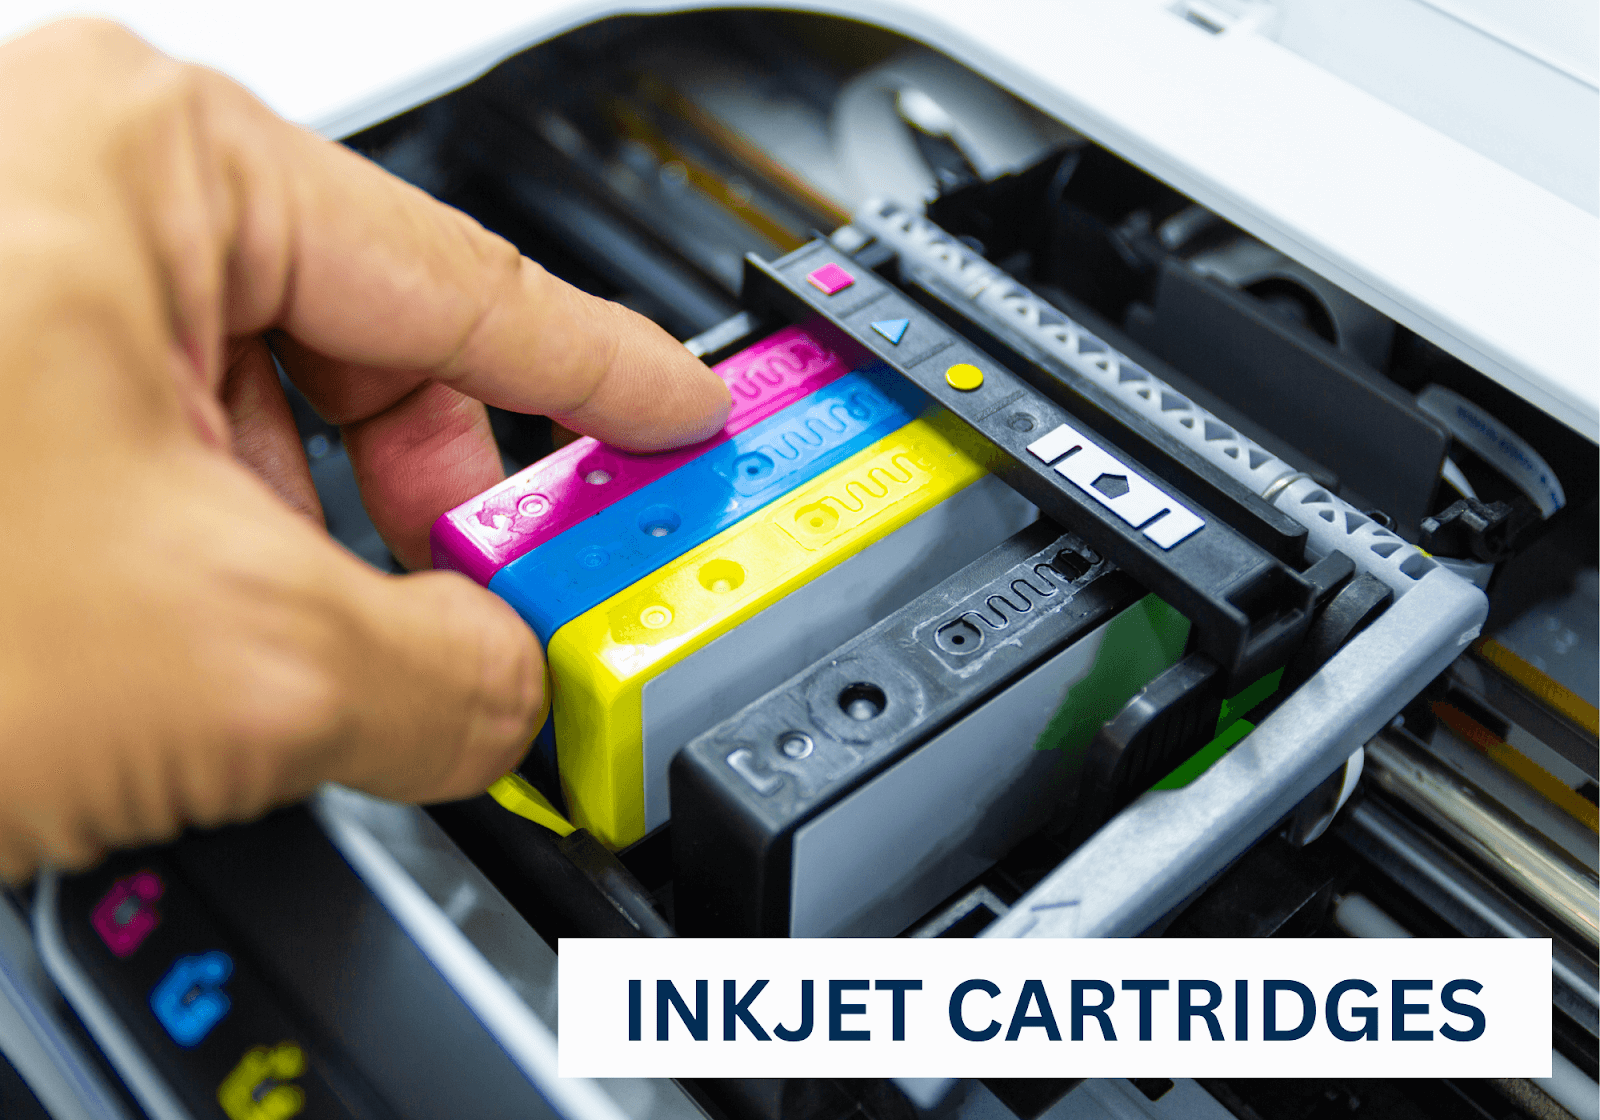 Inkjet cartridges